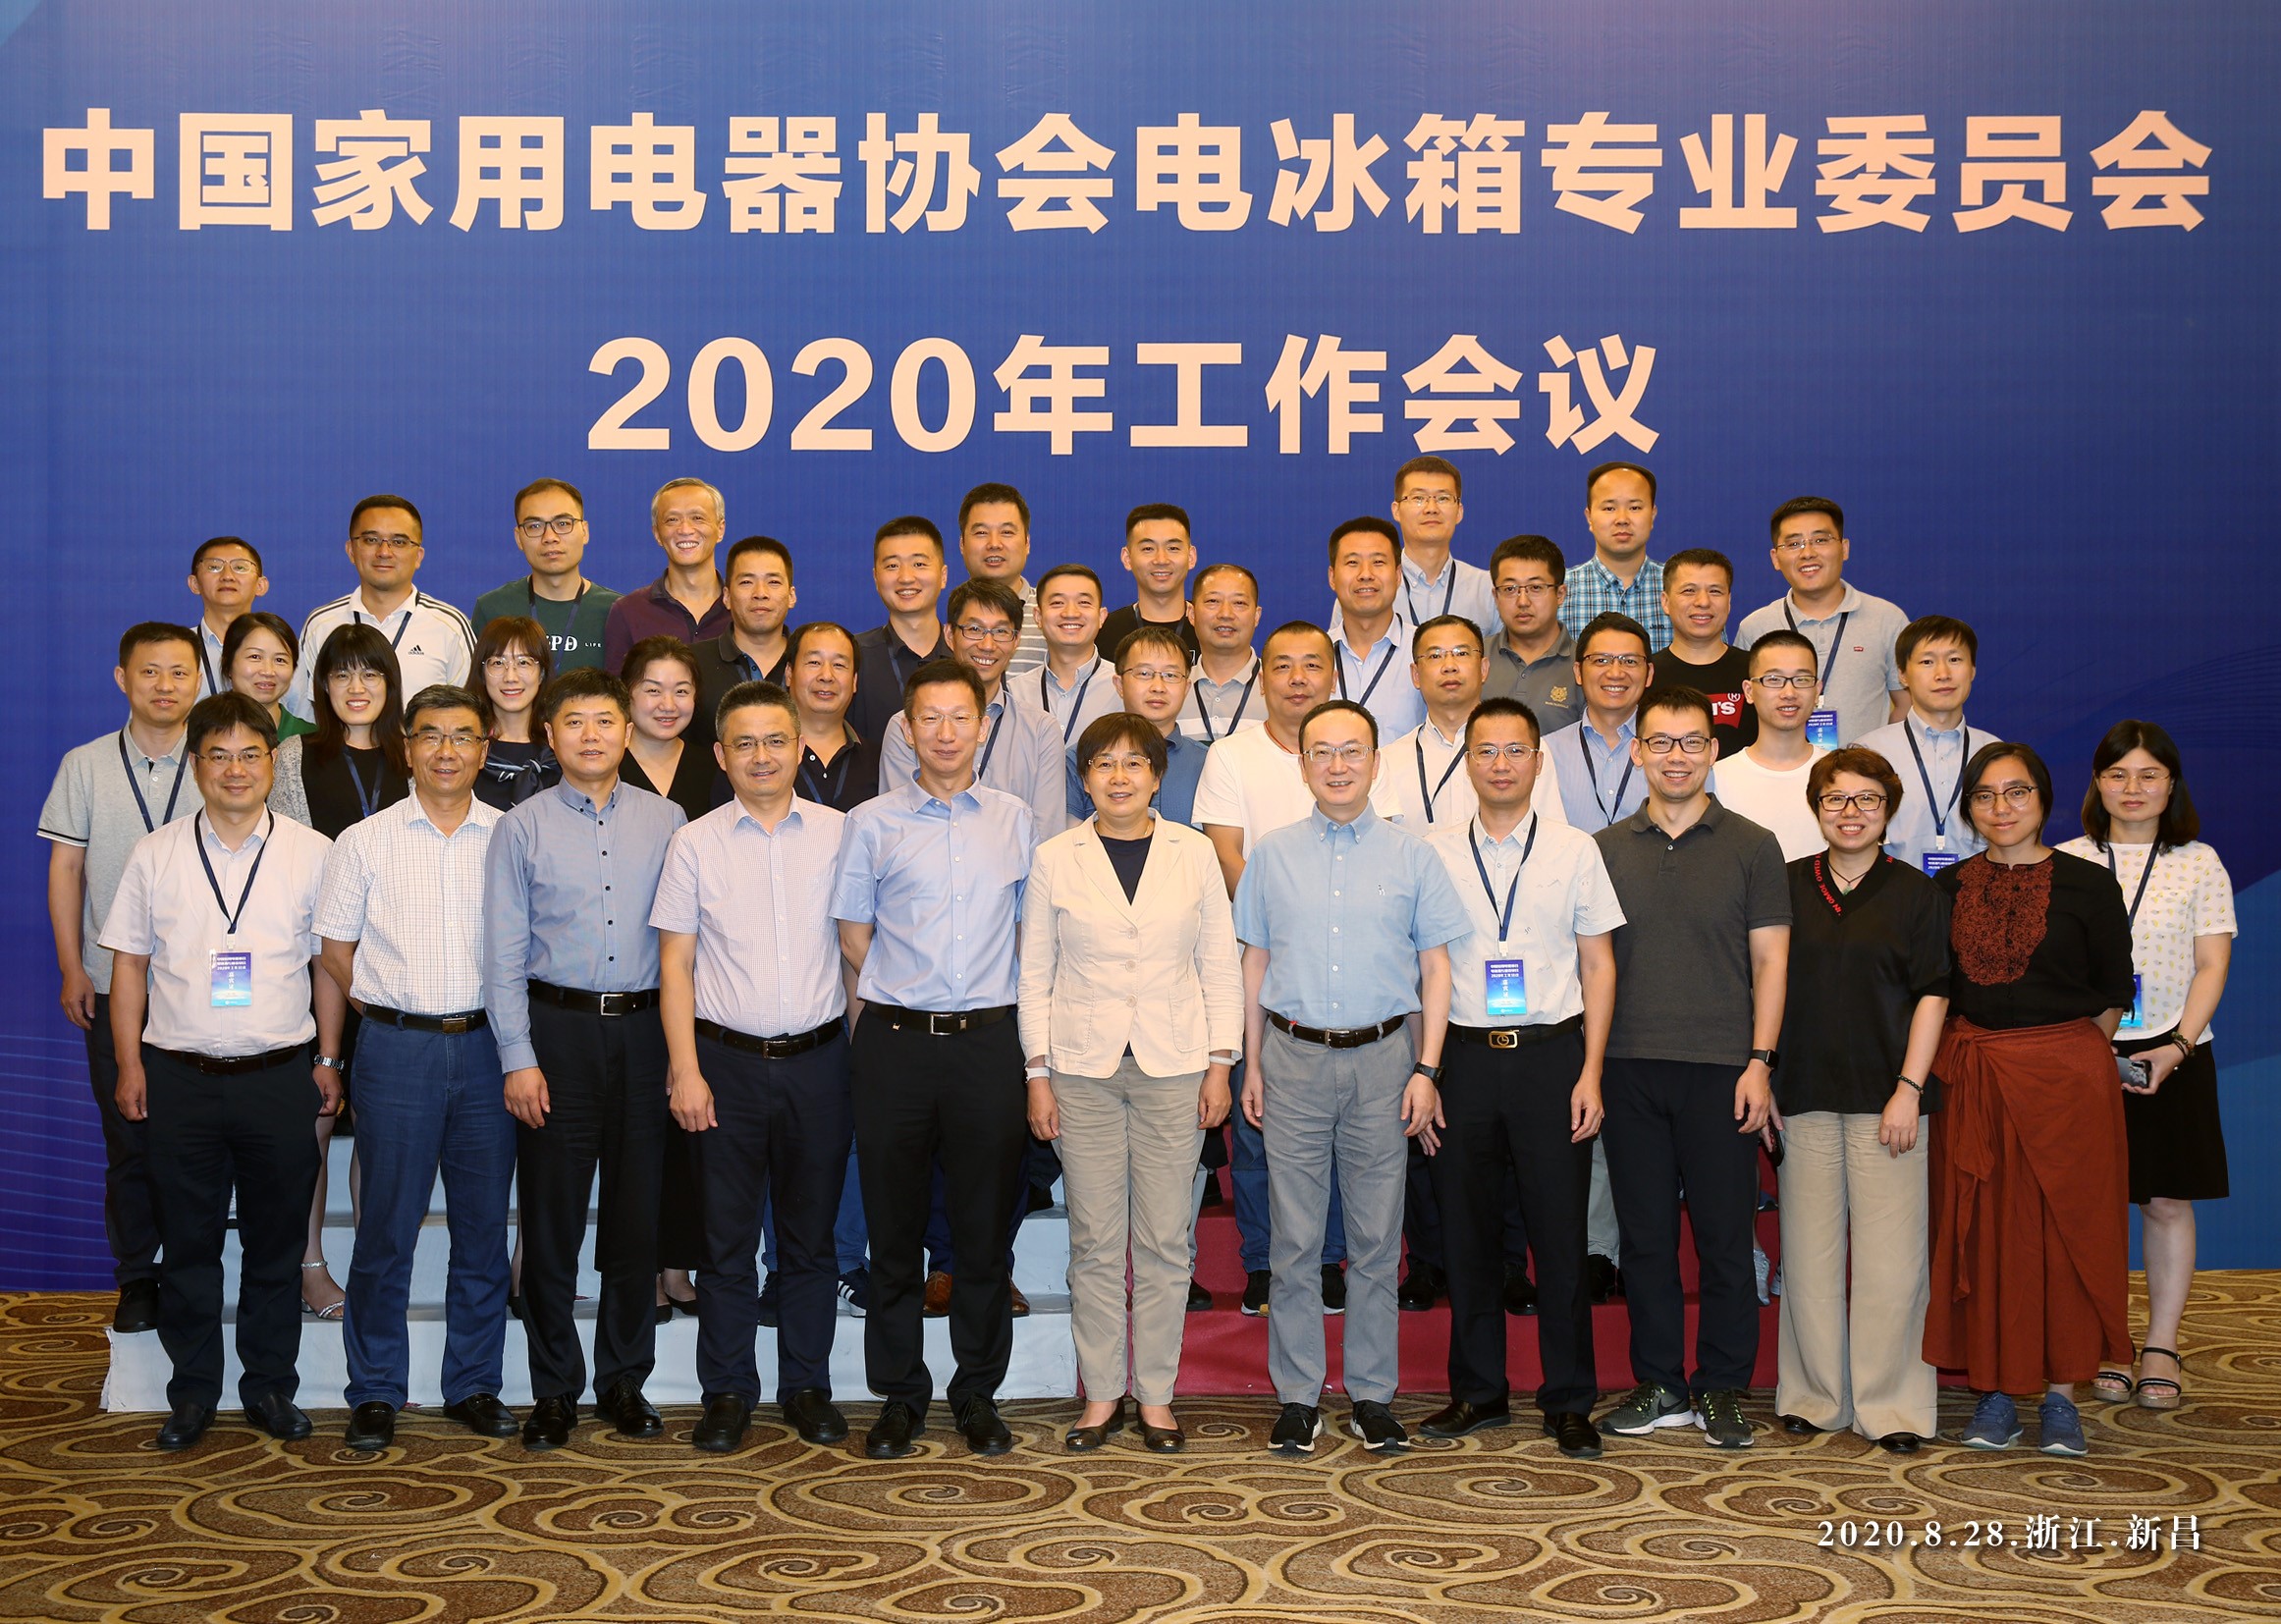 中国家用电器协会冰箱专业委员会2020年工作会议顺利召开